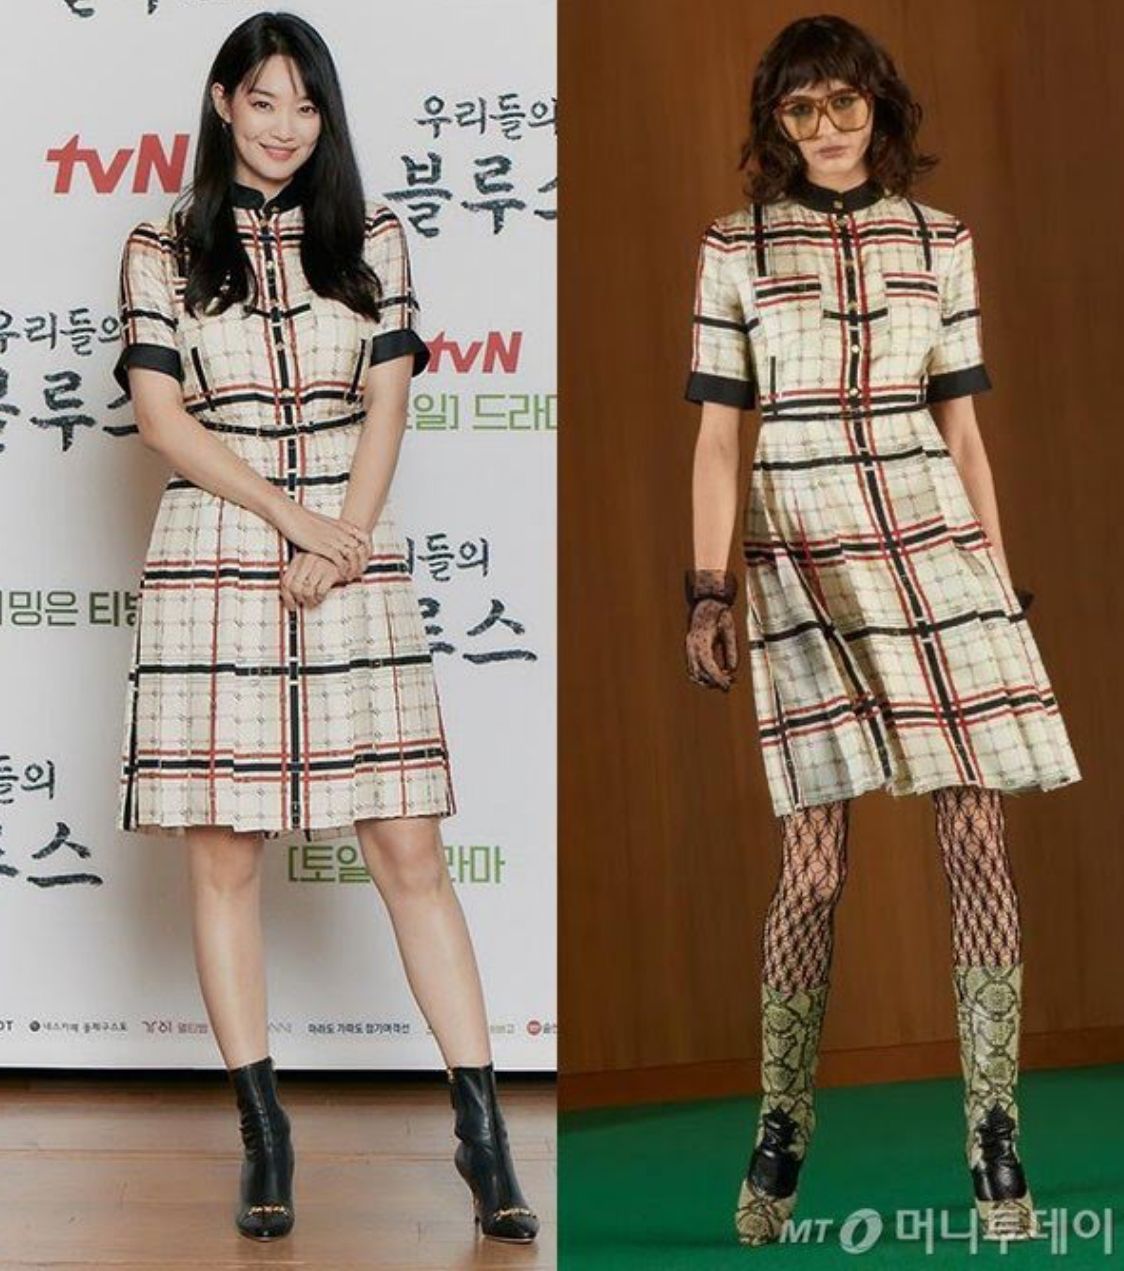 Gaun Gucci yang dikenakan oleh Shin Min Ah (kiri) dan model (kanan) |  Uang Hari Ini